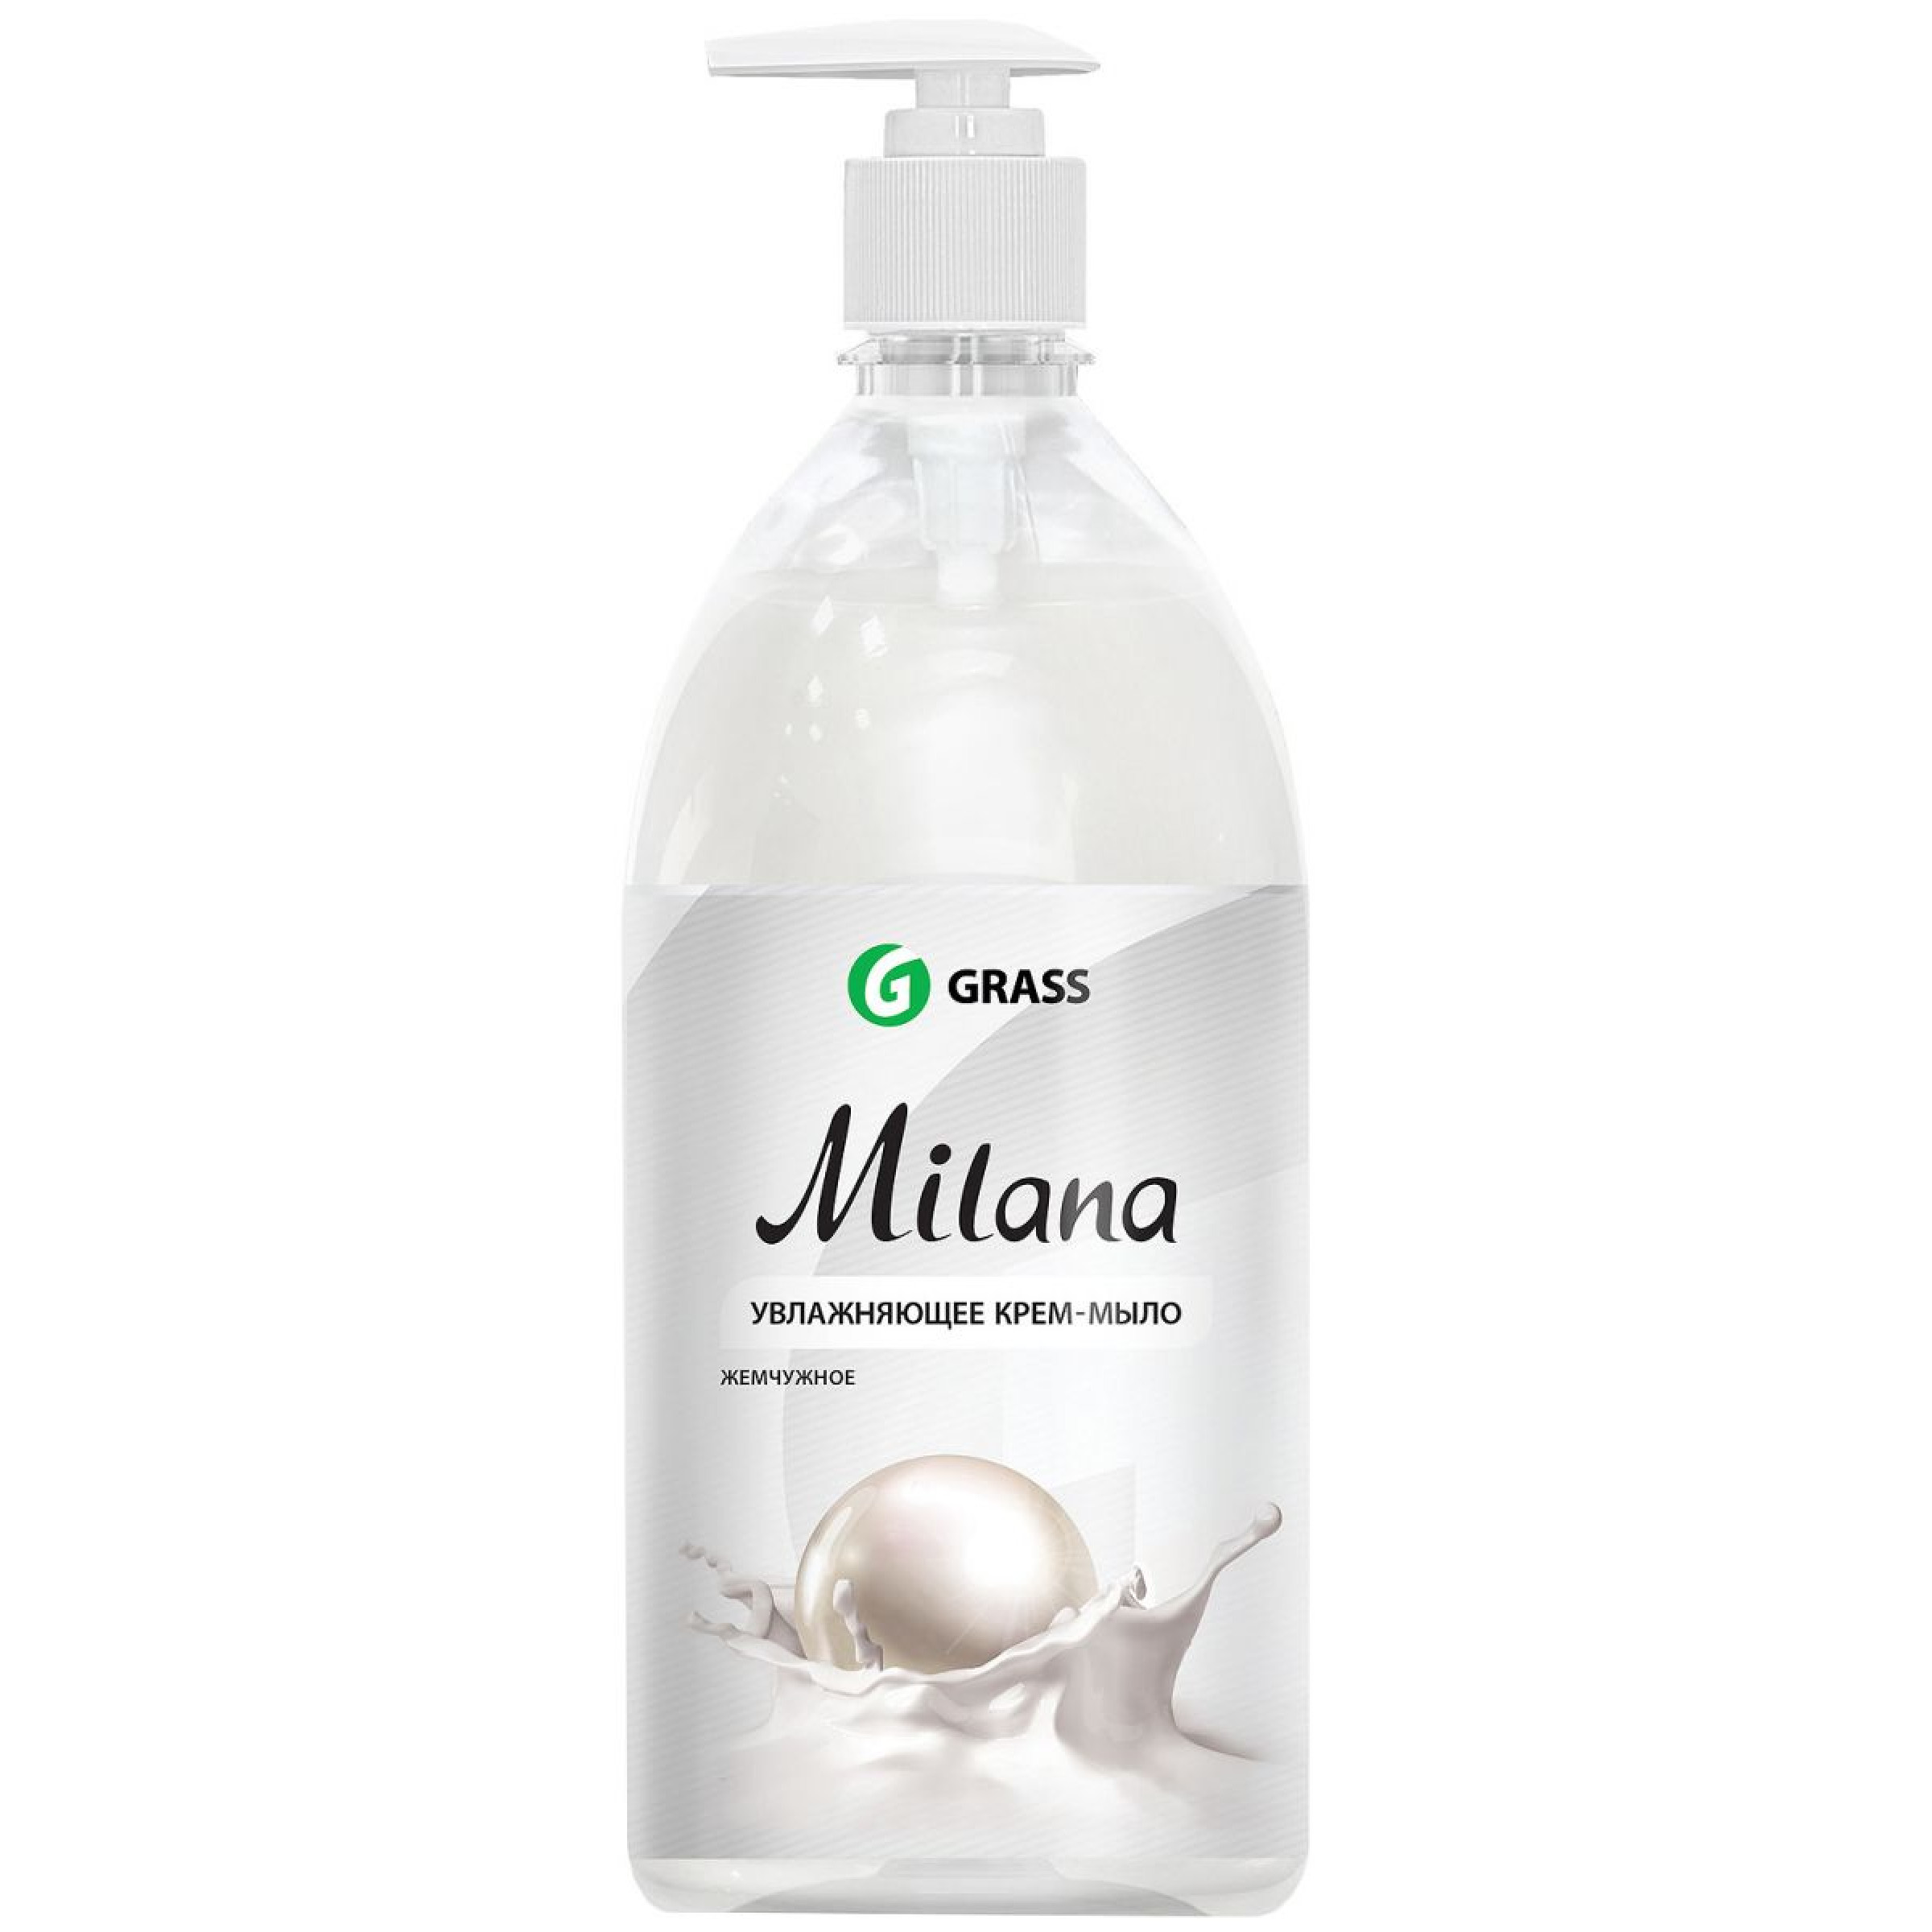 Жидкое крем-мыло Milana жемчужное с дозатором GRASS, 1л